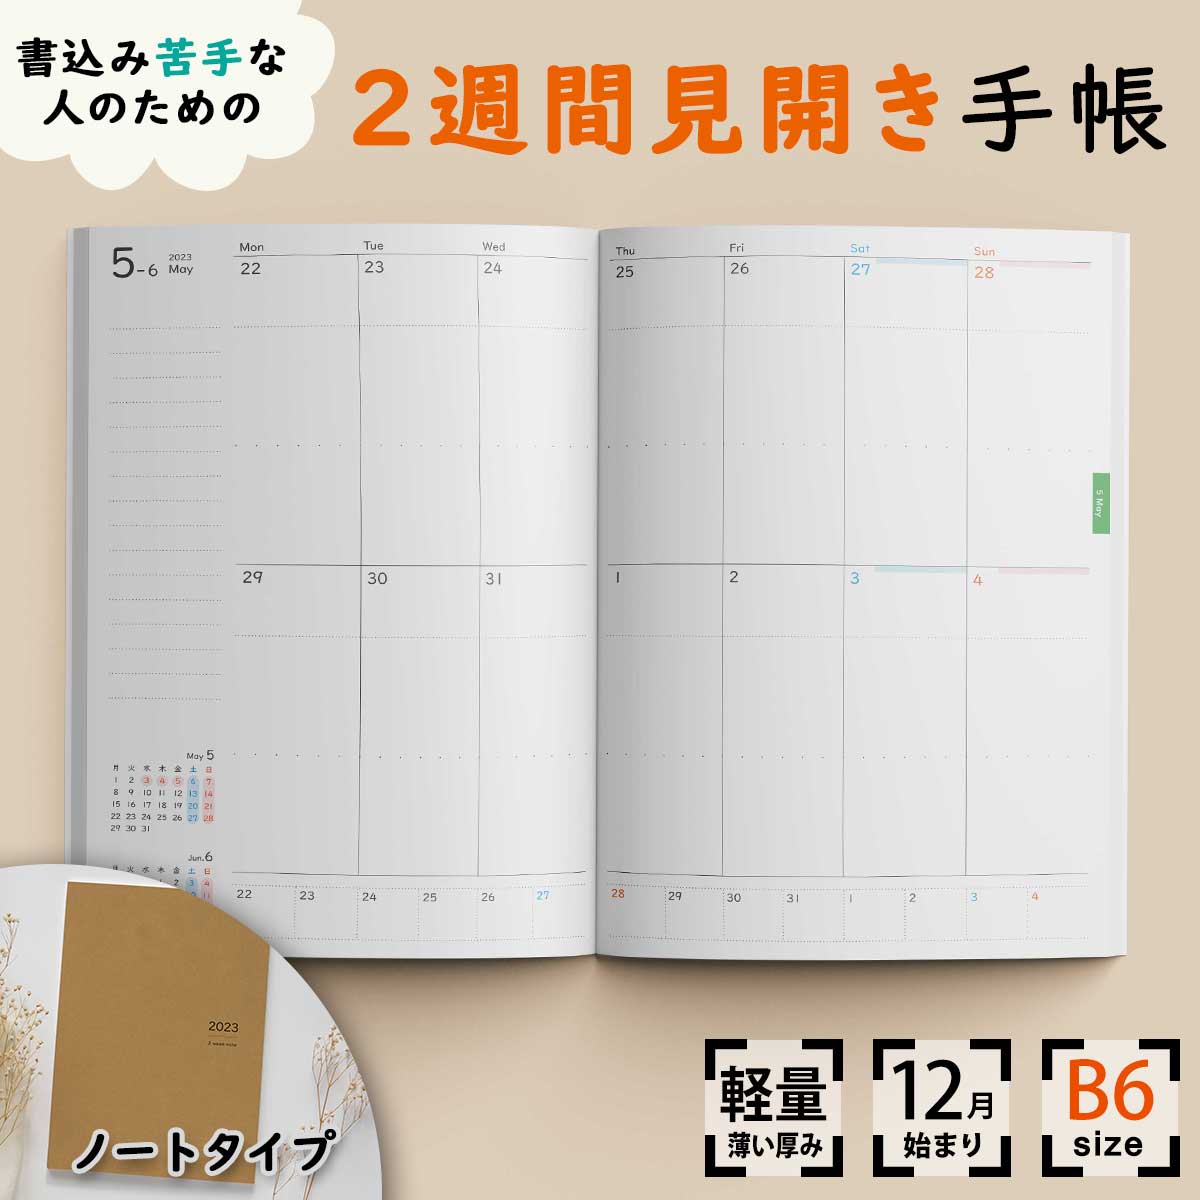 2weeknote【2週間手帳】